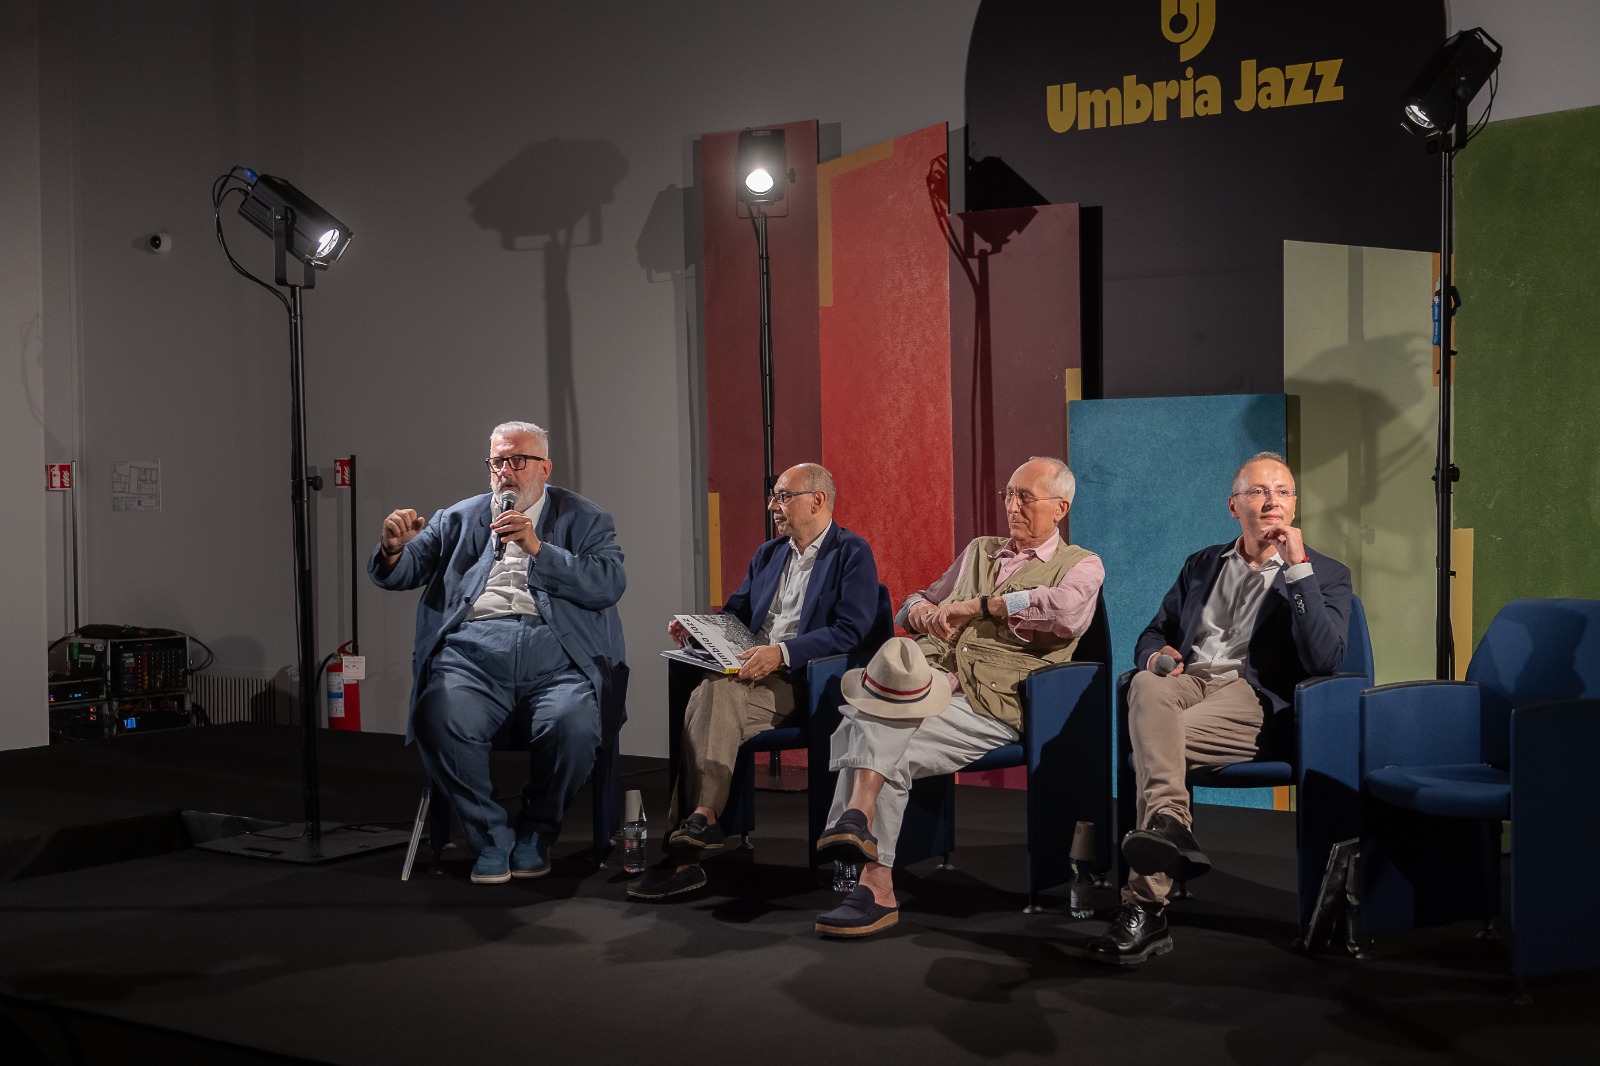 umbria jazz 2023 Anteprima 6 luglio 1